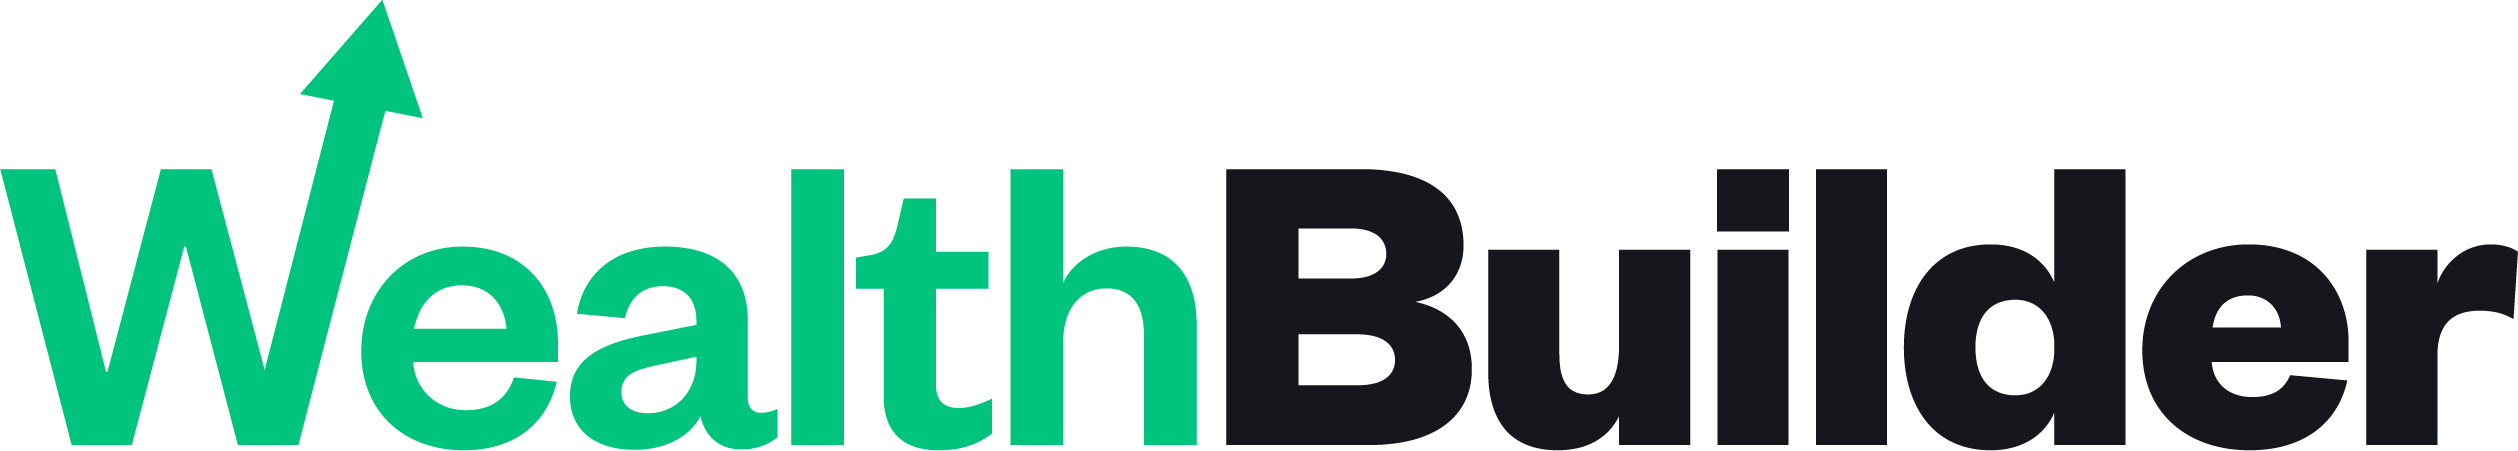 wealthbuilder logomark